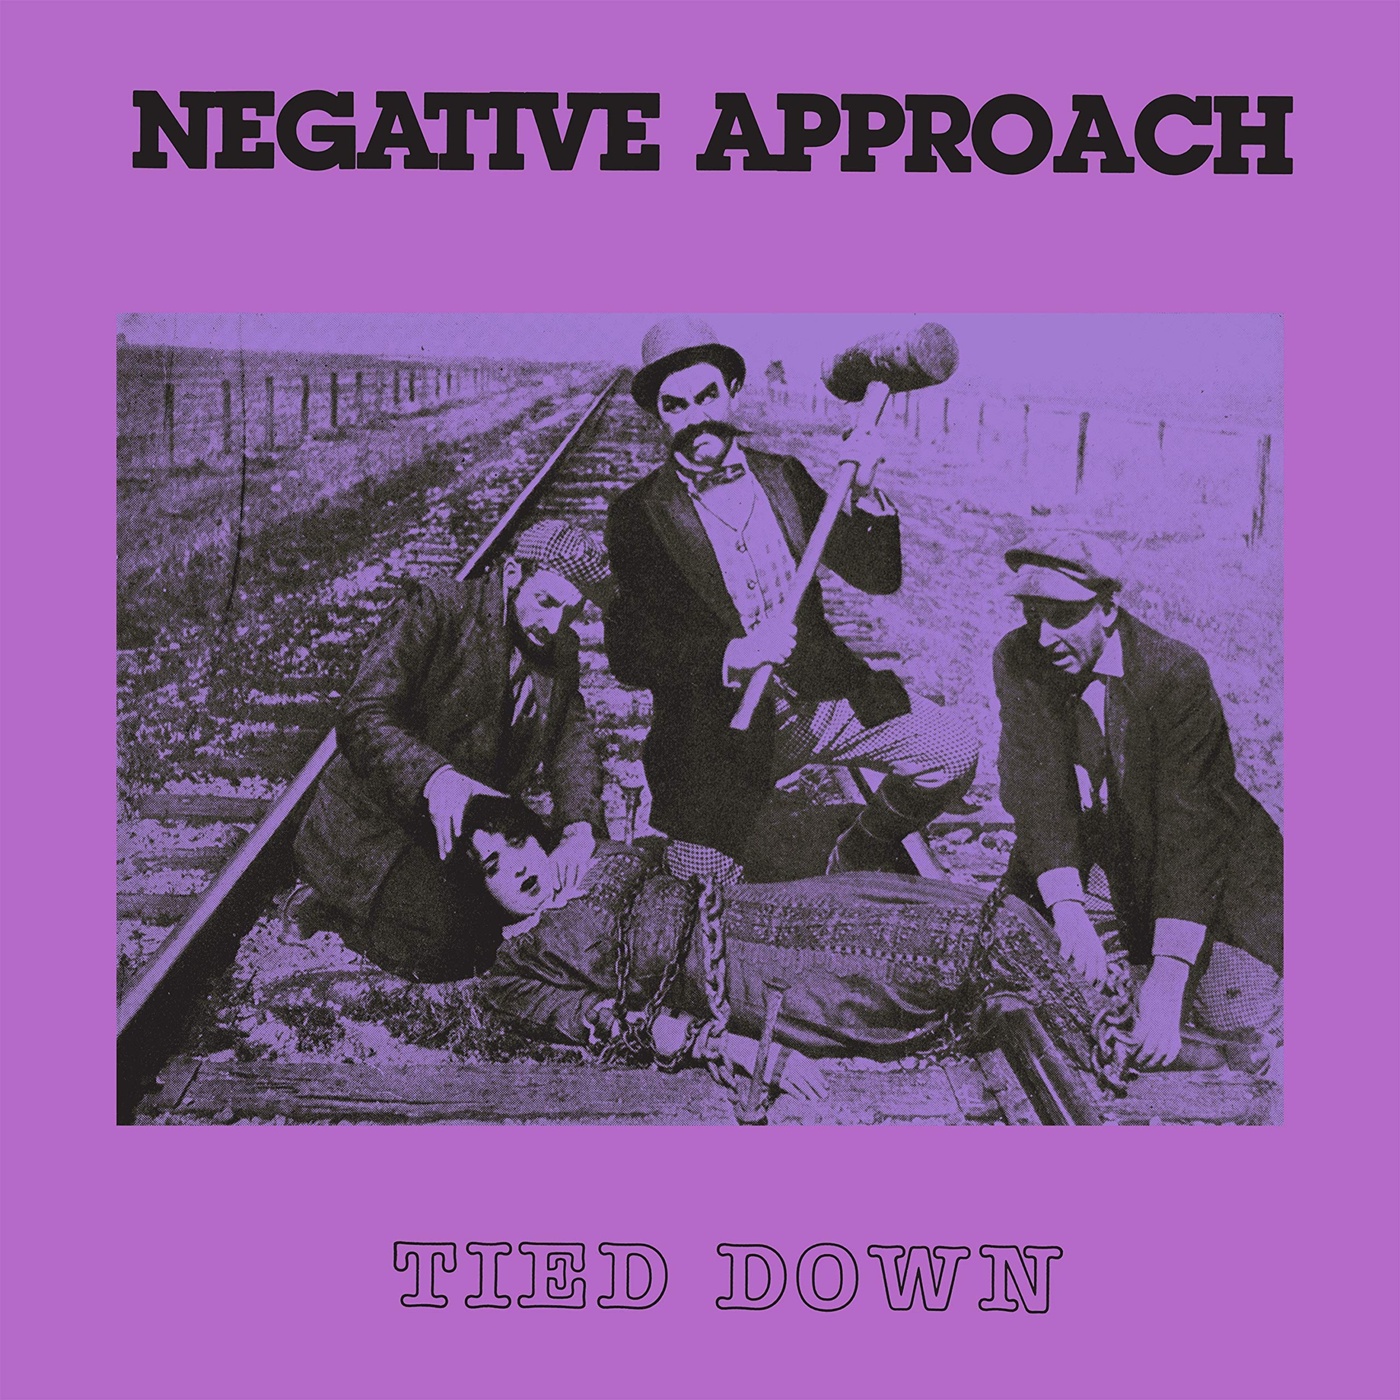 Песни революции и гражданской. Negative approach negative approach. Negative approach Band. Negative approach logo.